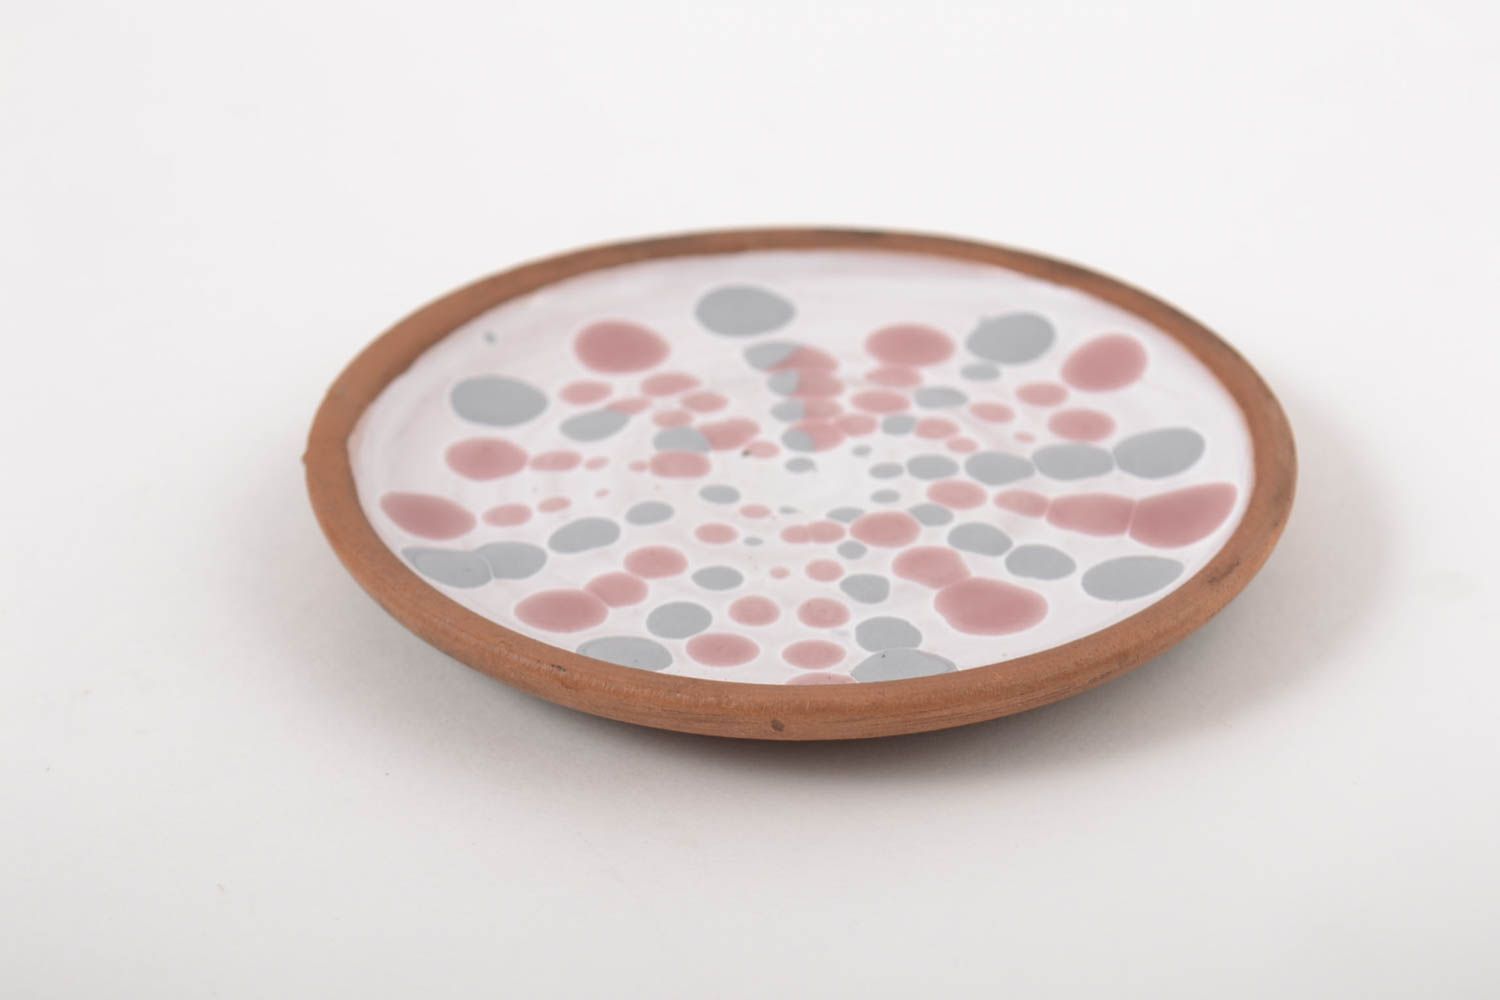 Plato de cerámica hecho a mano decorado utensilio de cocina vajilla moderna  foto 2